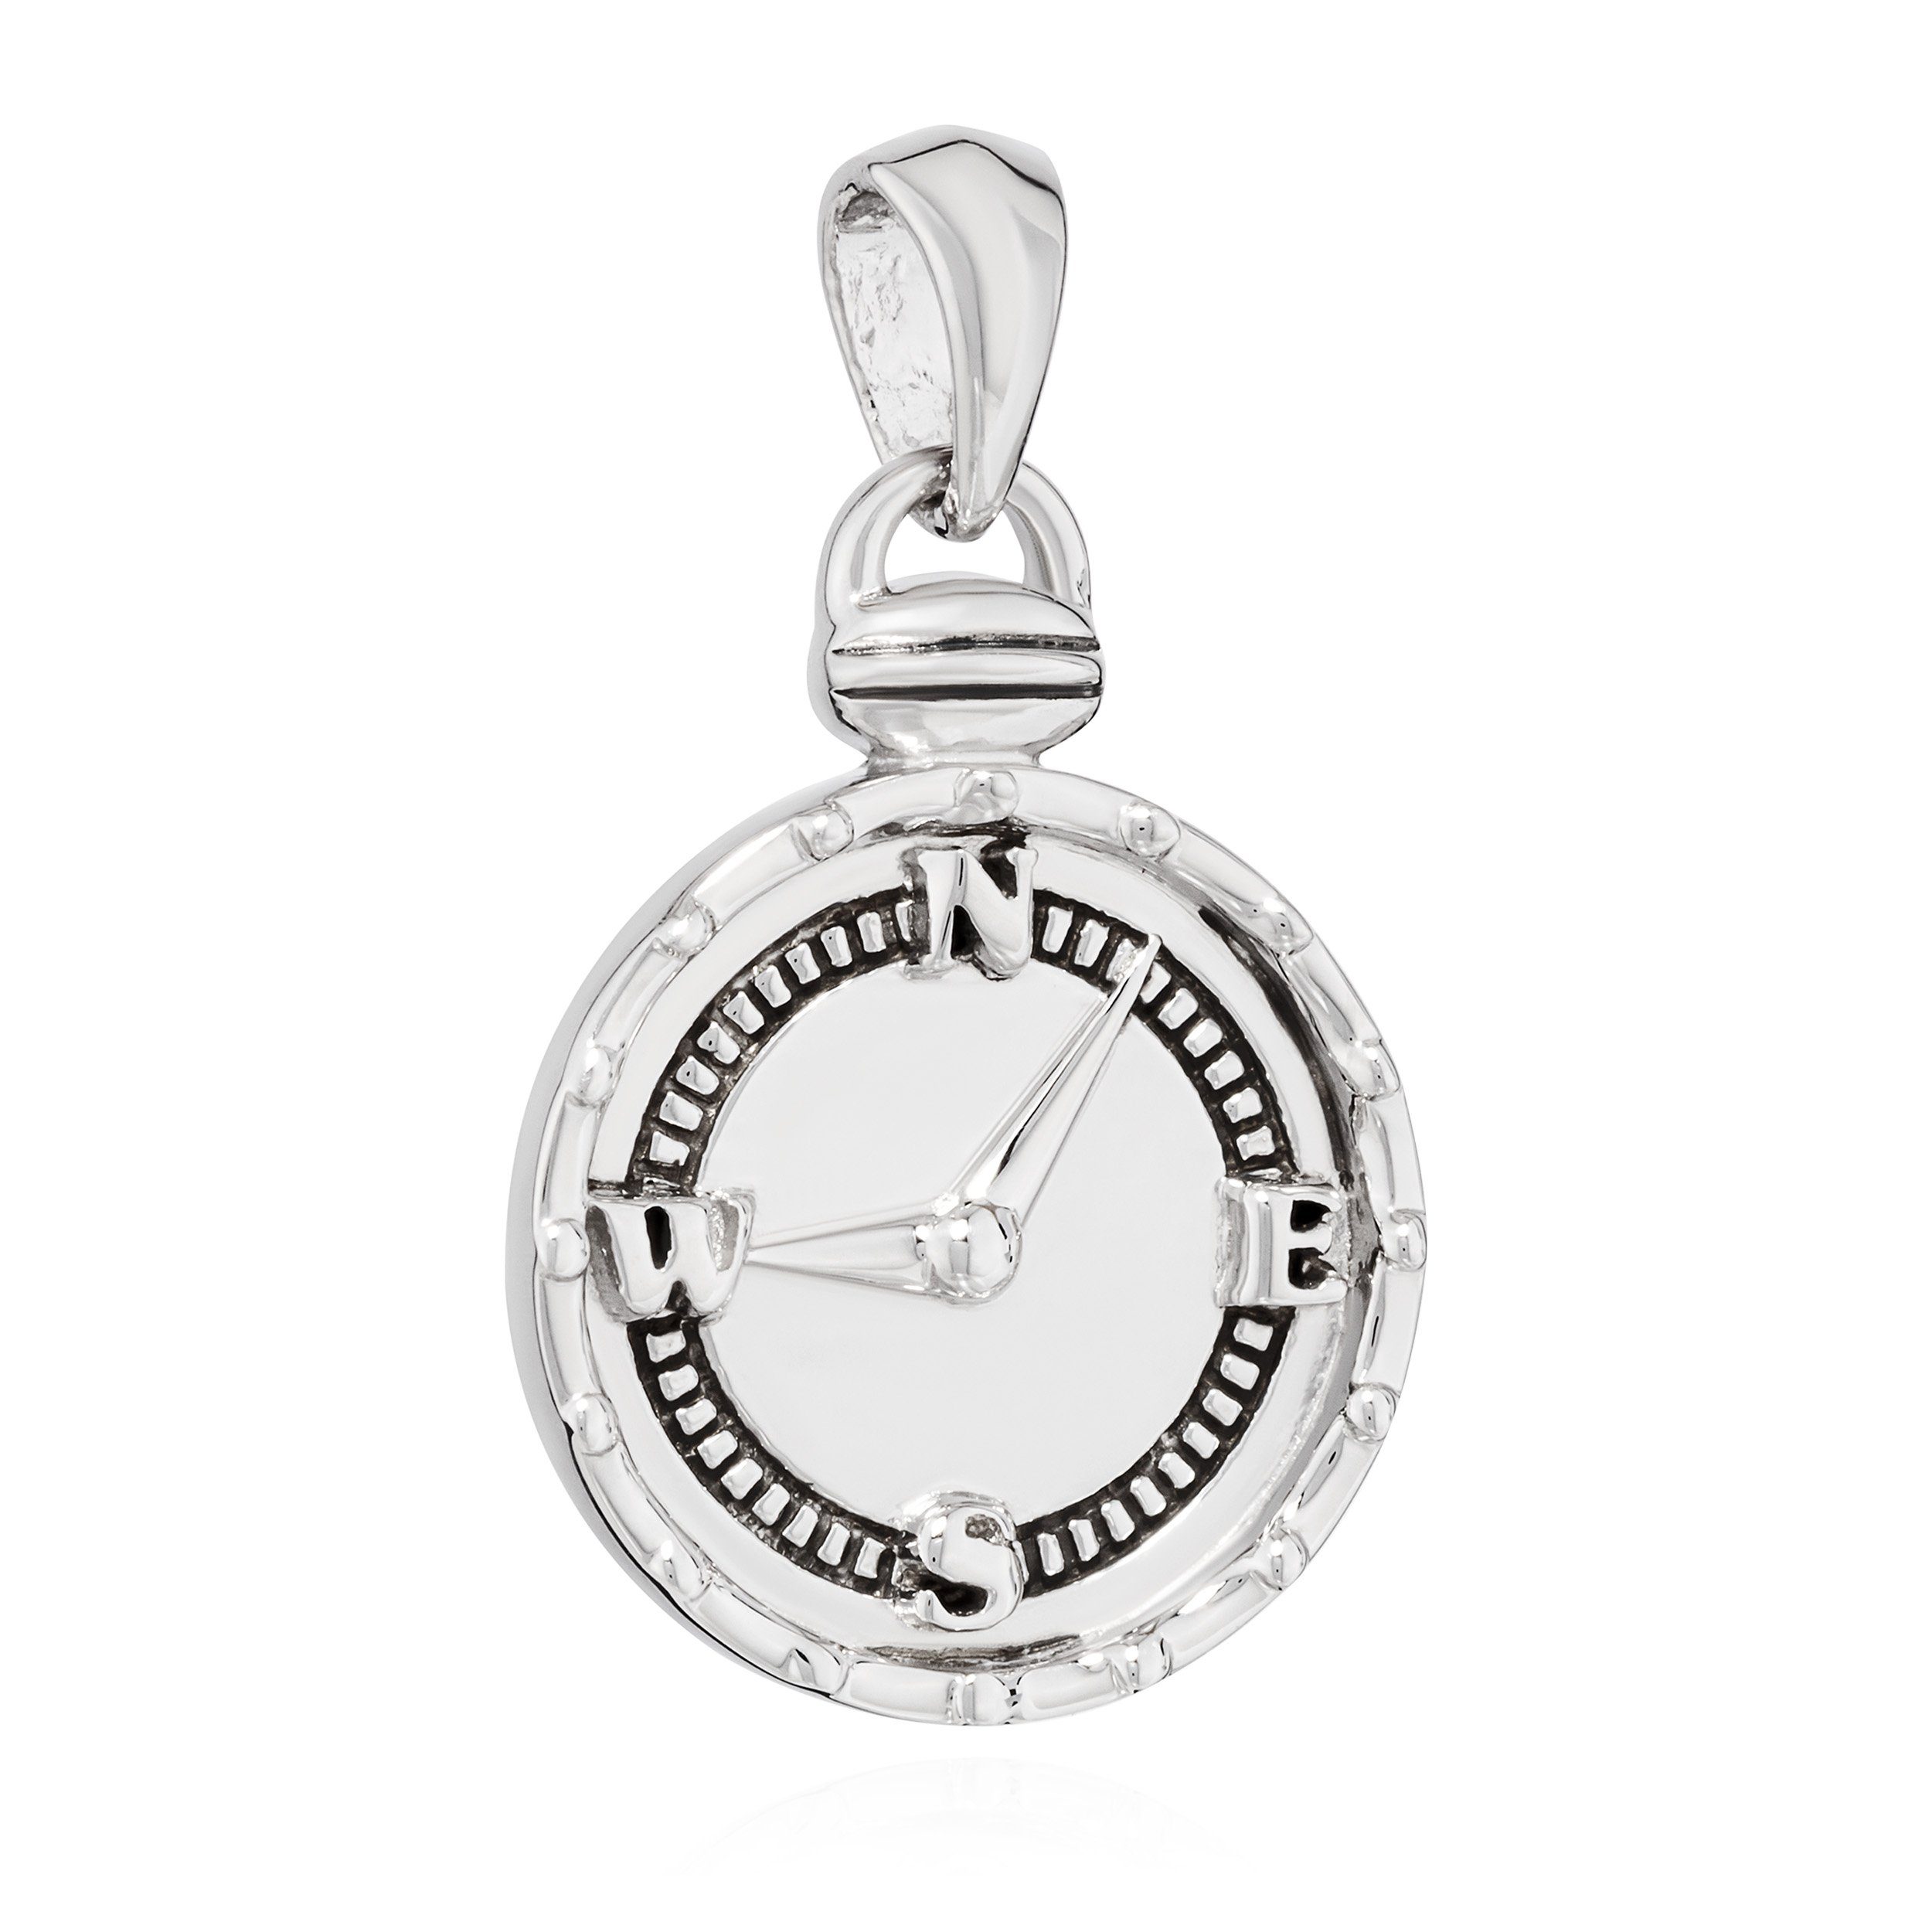 NKlaus Kettenanhänger 15mm Kettenanhänger Kompass 925 Silber Schmuckanhänger für Halskette